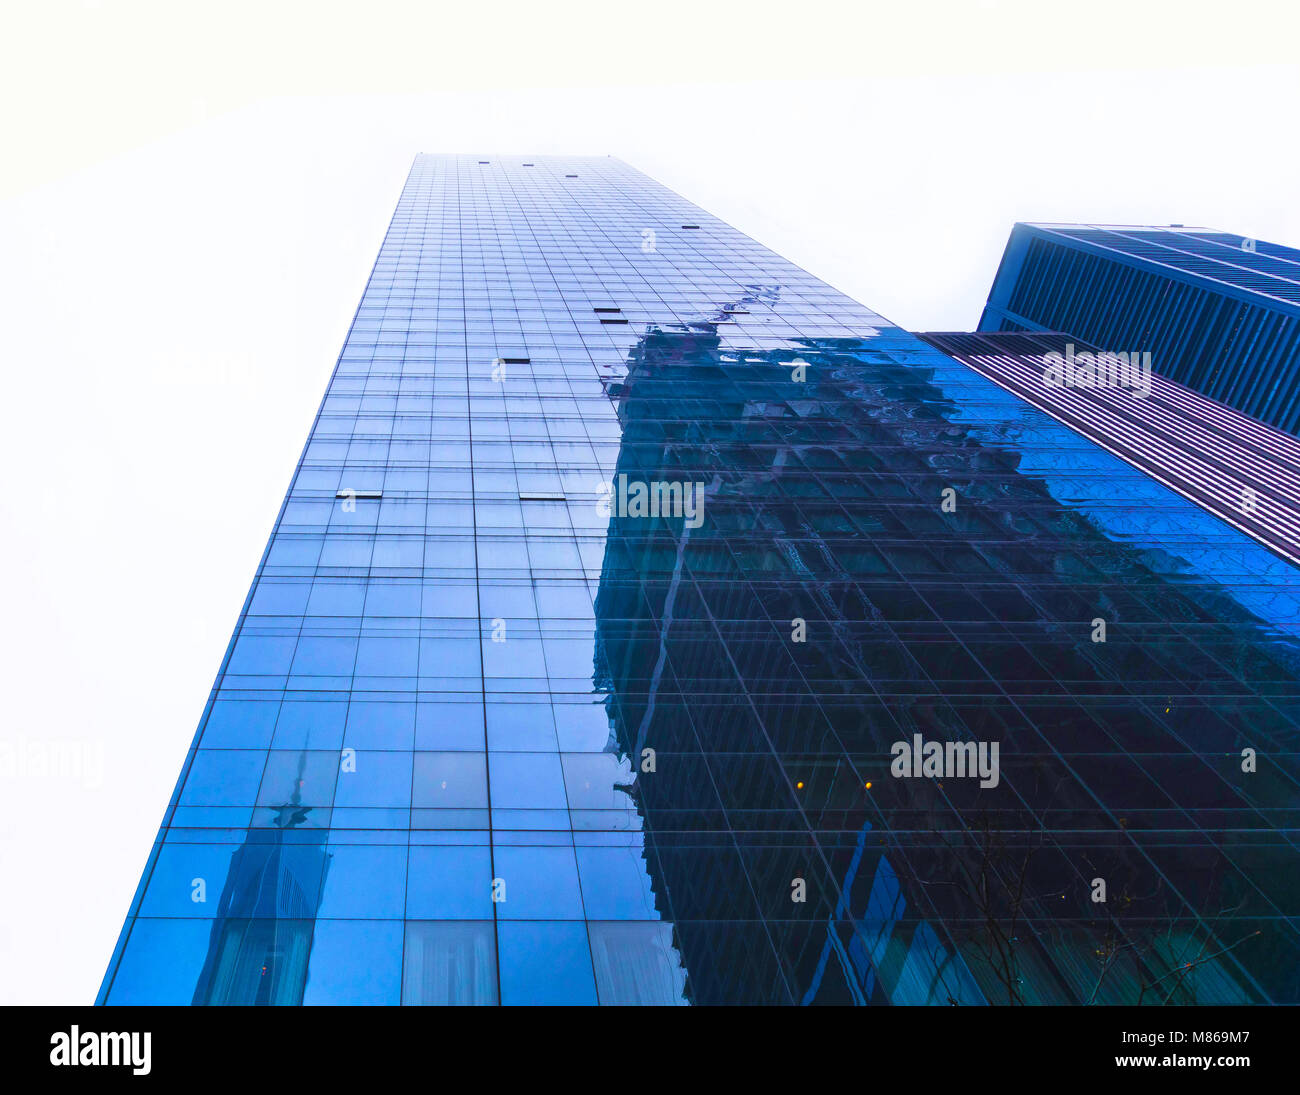 La Ciudad de Nueva York, Estados Unidos de América - Mayo 01,2016: El Hotel Millenium Hilton con la Torre de la libertad y la reflexión sobre el sitio del WTC de windows Foto de stock